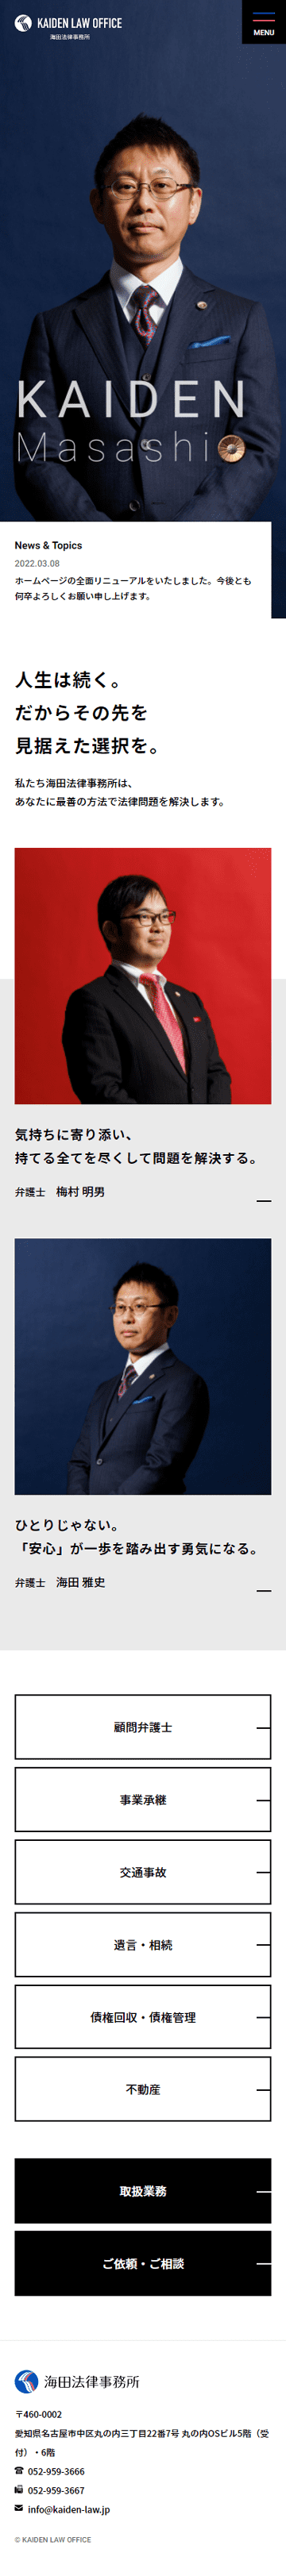 海田法律事務所のホームページ　スマホ版のキャプチャ